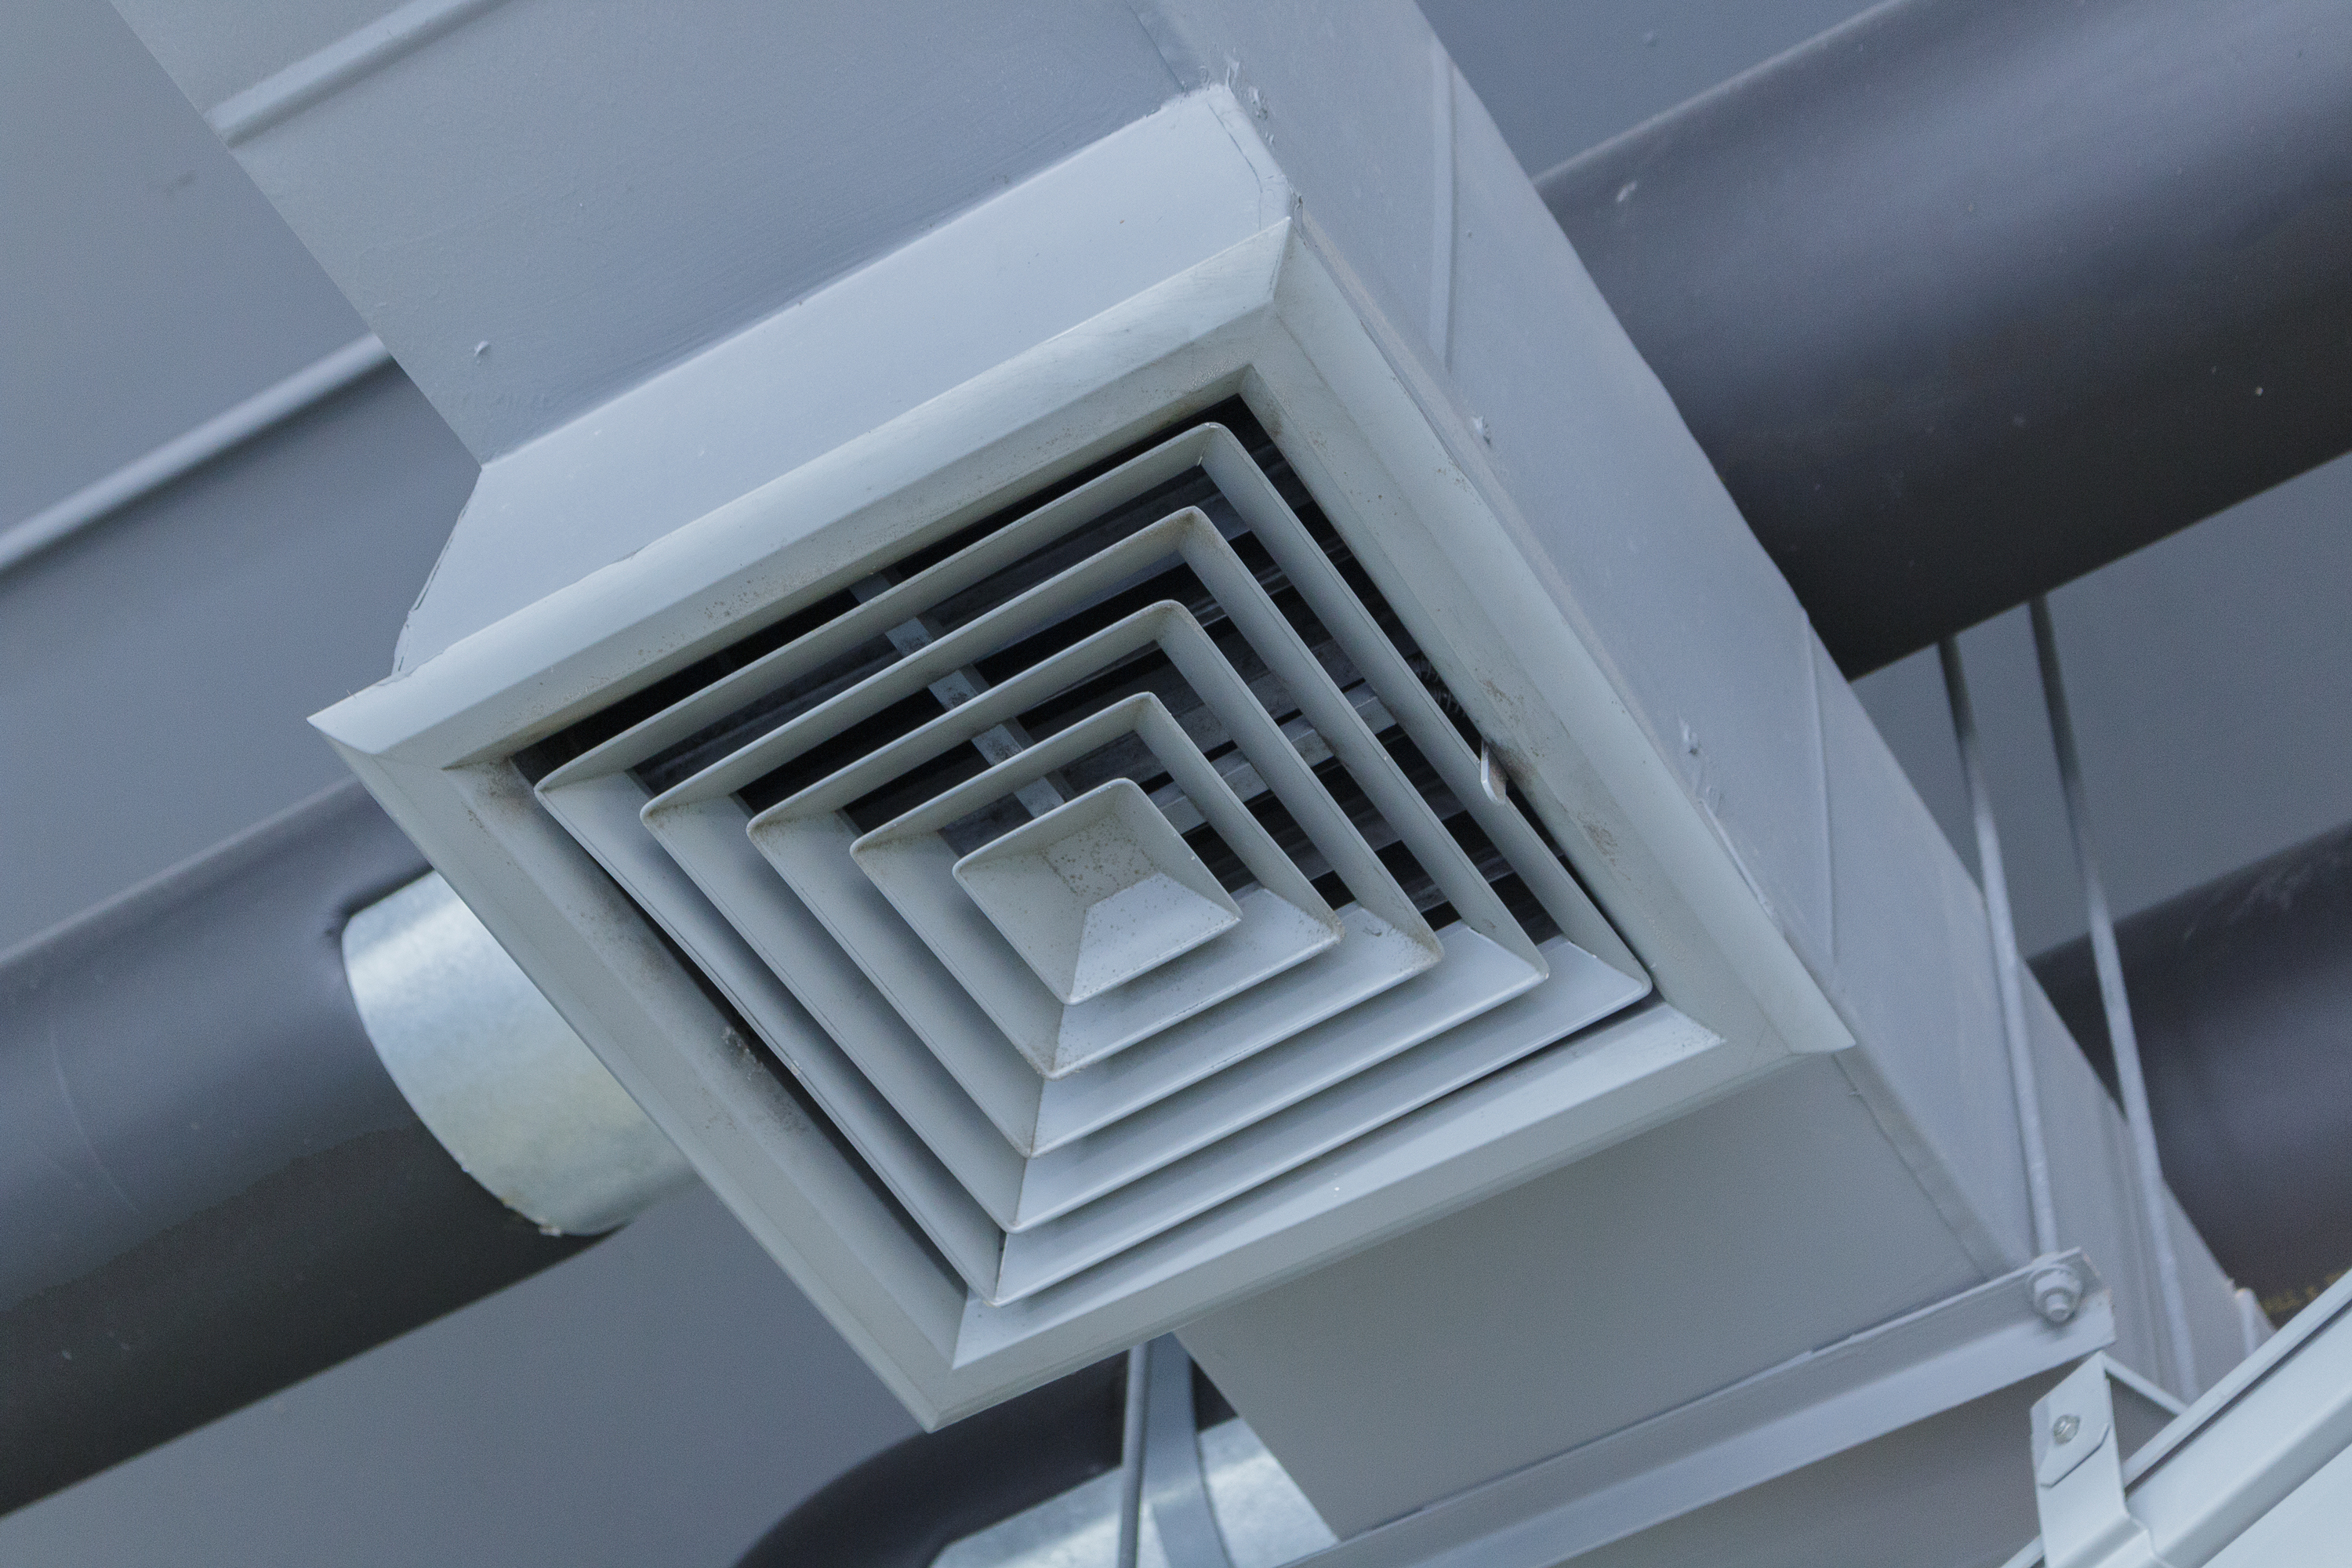 Вентиляционный вход. Система вентиляции Air Ventilation. Вытяжка воздуховод nv150. Воздухоприемные решетки приточно-вытяжная вентиляция. Решетка канальная воздухозаборная.